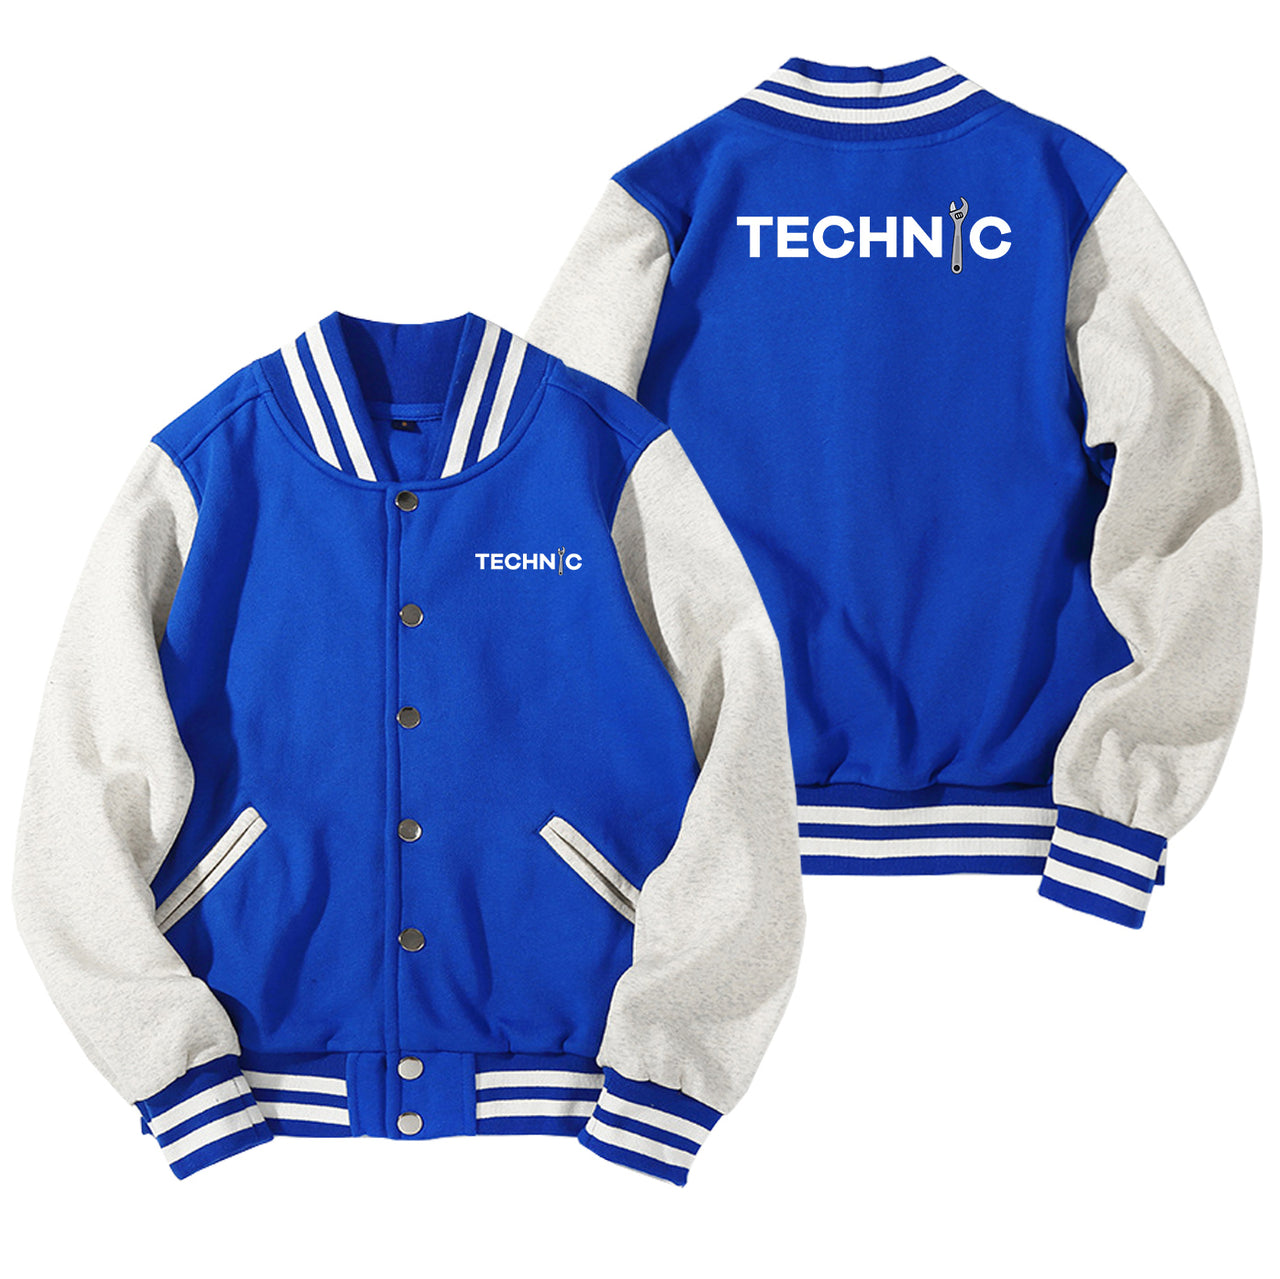 Technic Designed Baseball Style Jackets